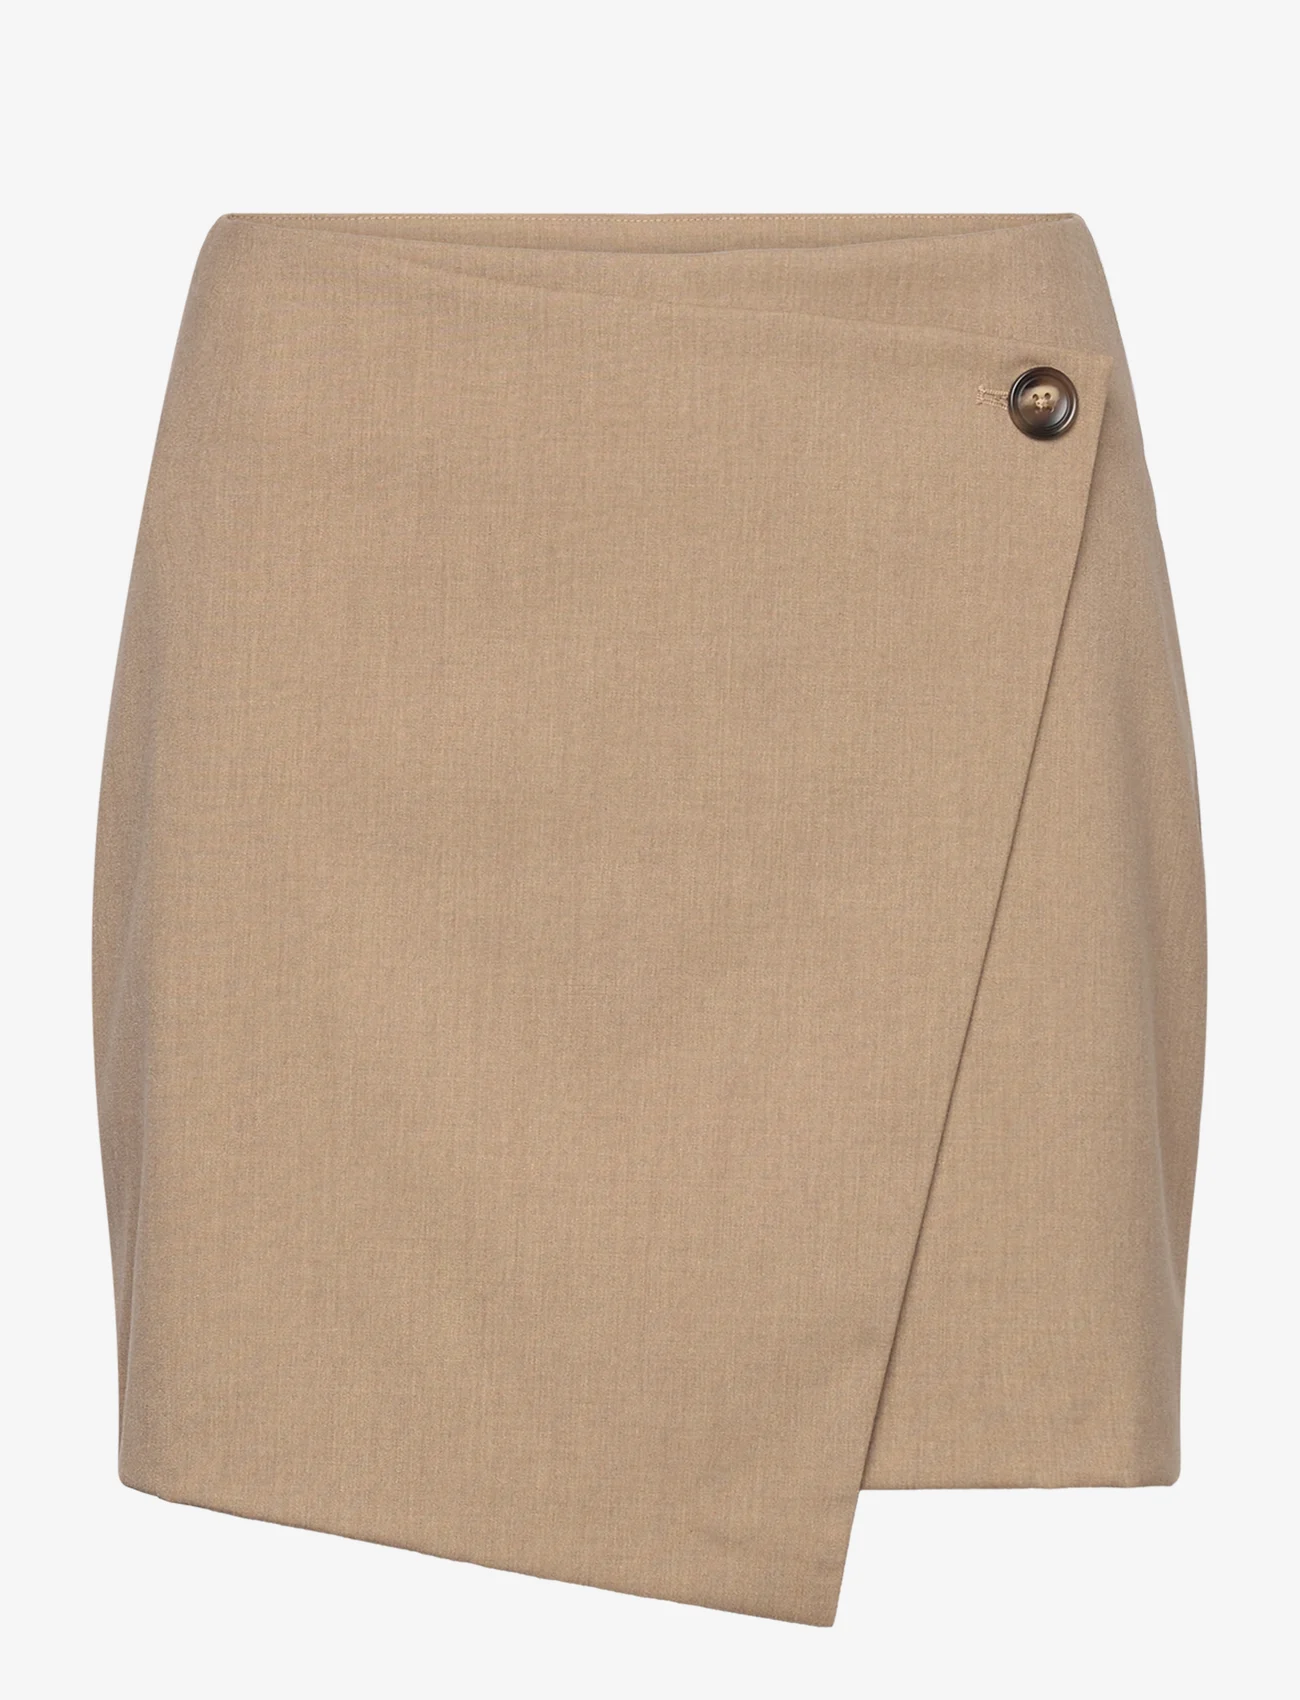 Bruun & Stengade - BS Emmie Skirt - short skirts - brown - 0